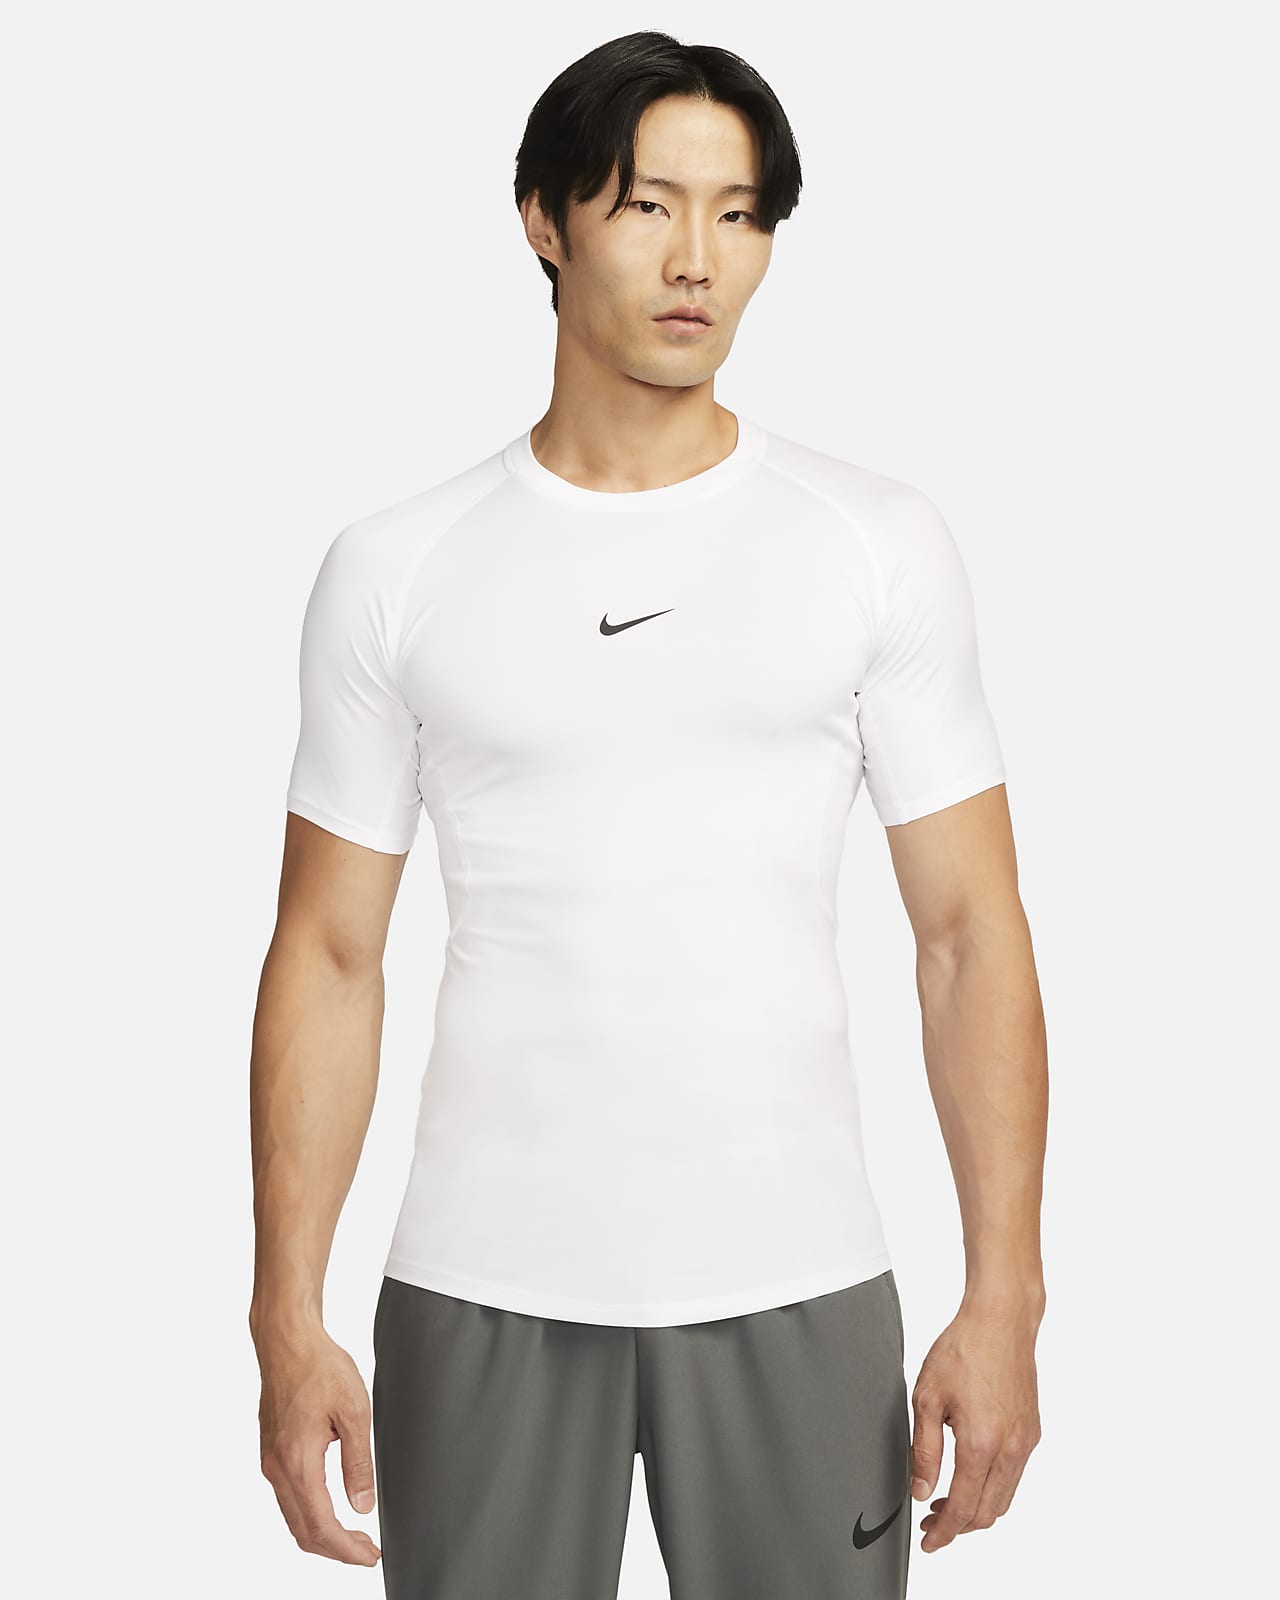 Ανδρική εφαρμοστή κοντομάνικη μπλούζα fitness Dri-FIT Nike Pro